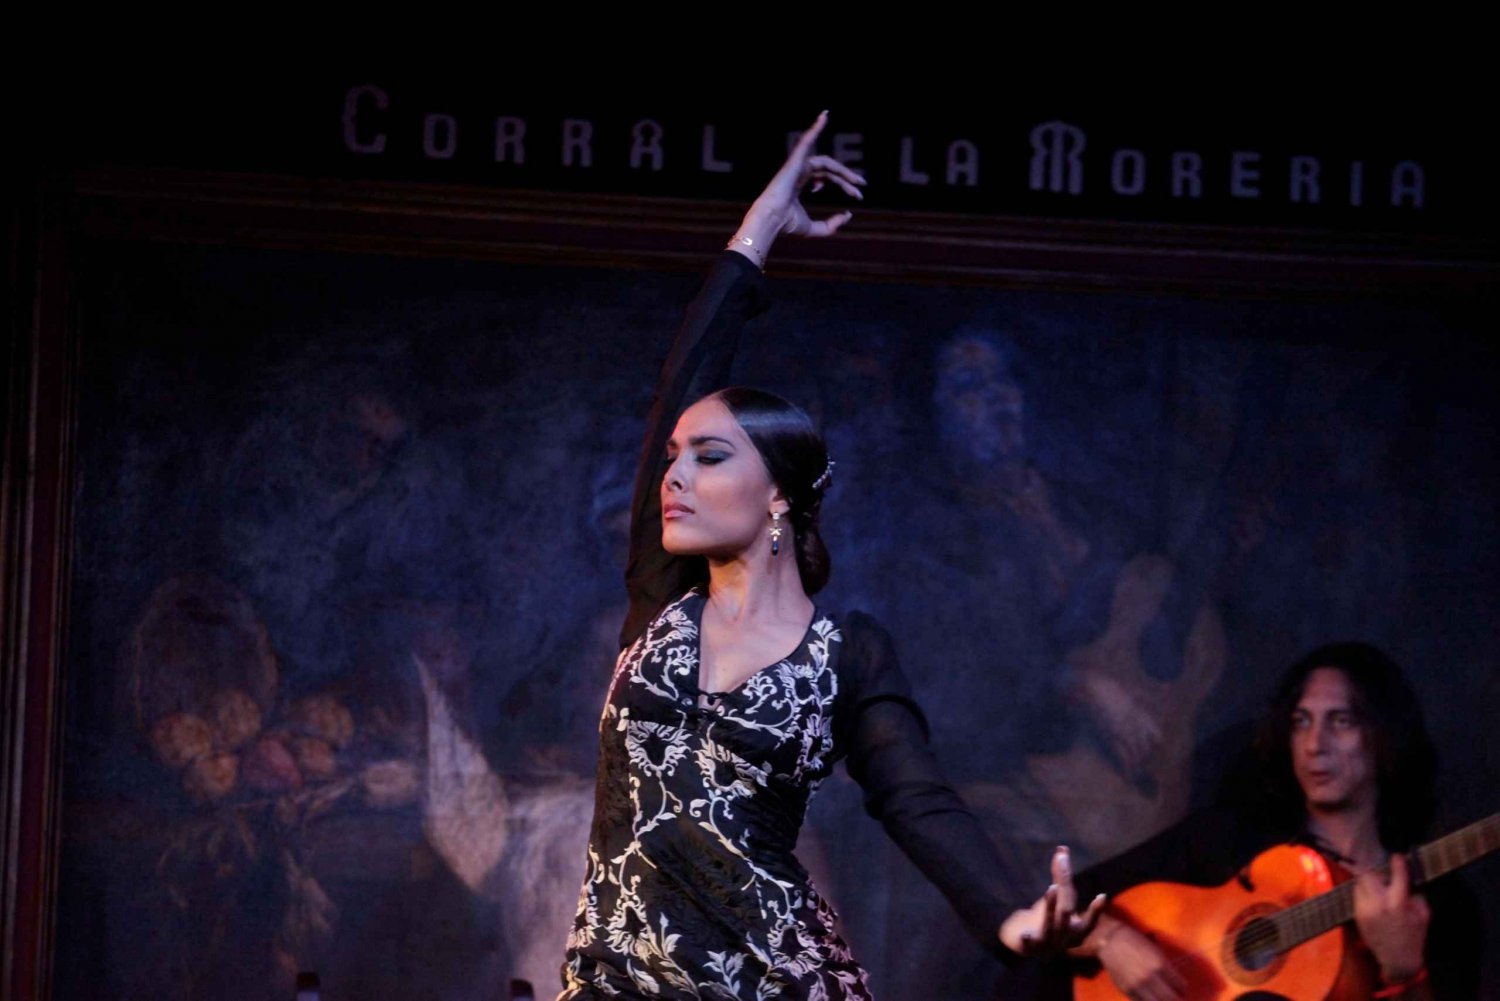 Madrid: espectáculo de flamenco en el Corral de la Morería